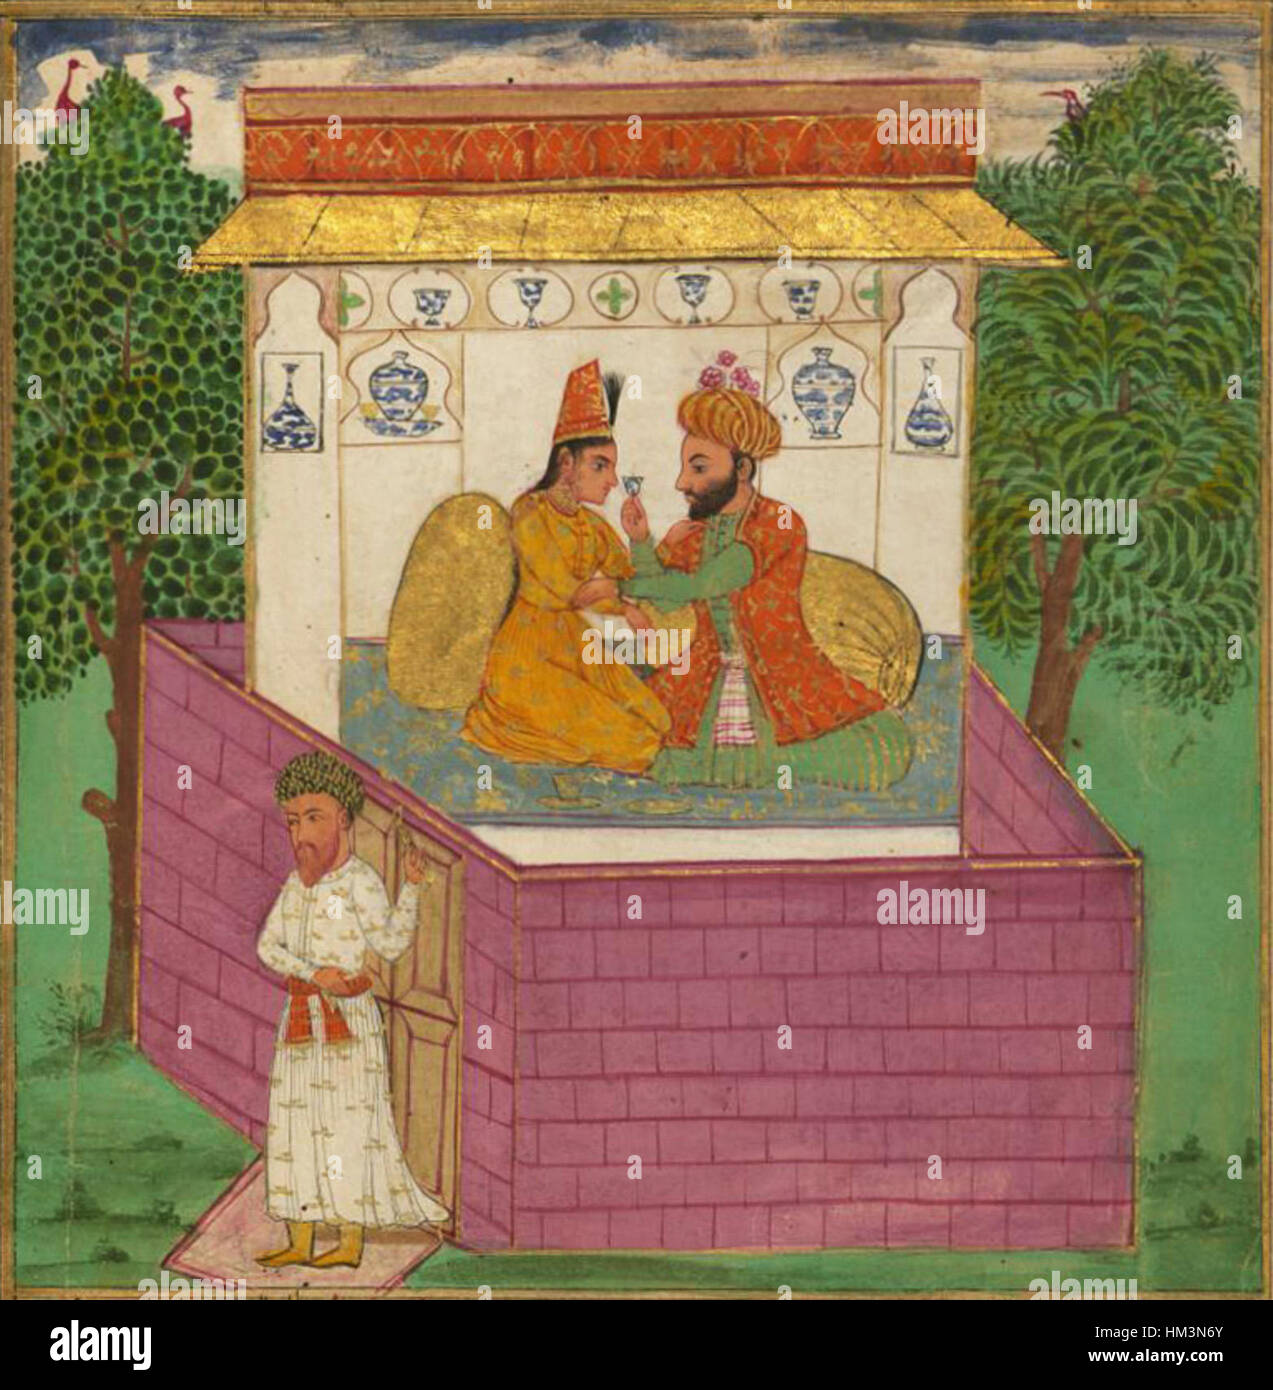 Jalal al-Din Rumi, Maulana - un cordonnier et l'épouse infidèle d'un Soufi surpris par son mari de retour imprévu à la maison de l'image - Détail Banque D'Images